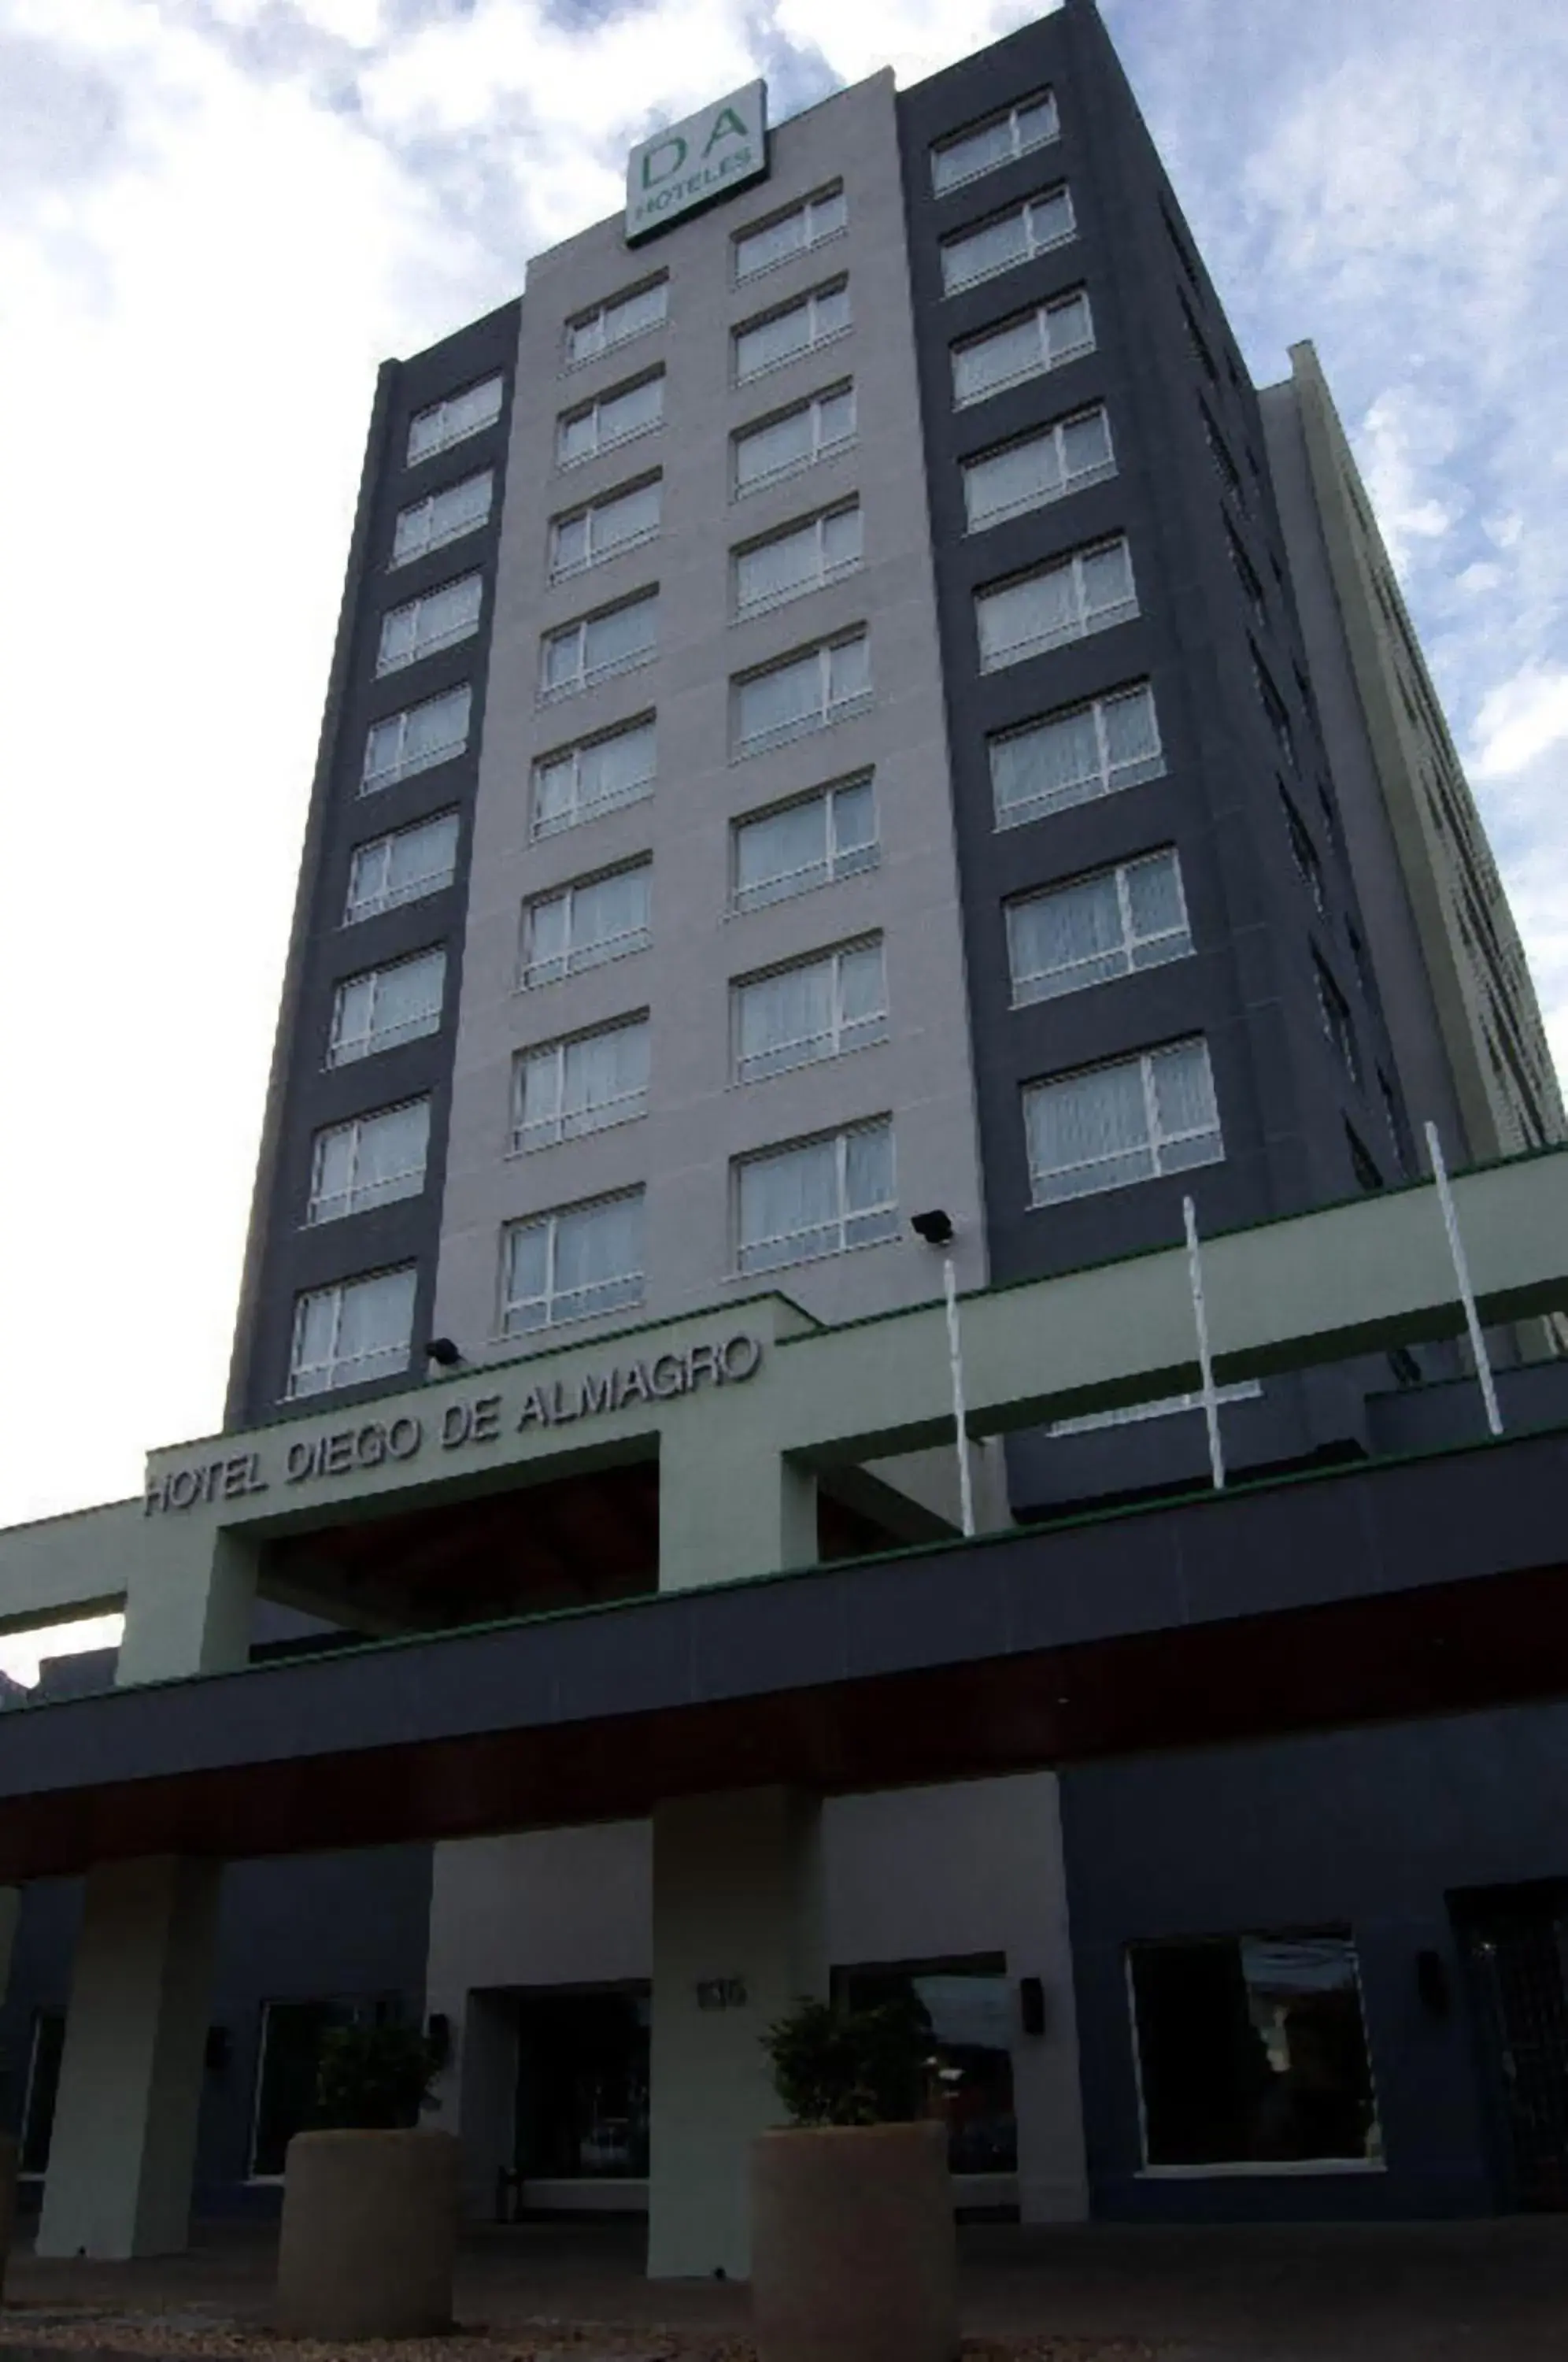 Facade/entrance, Property Building in Hotel Diego de Almagro Temuco